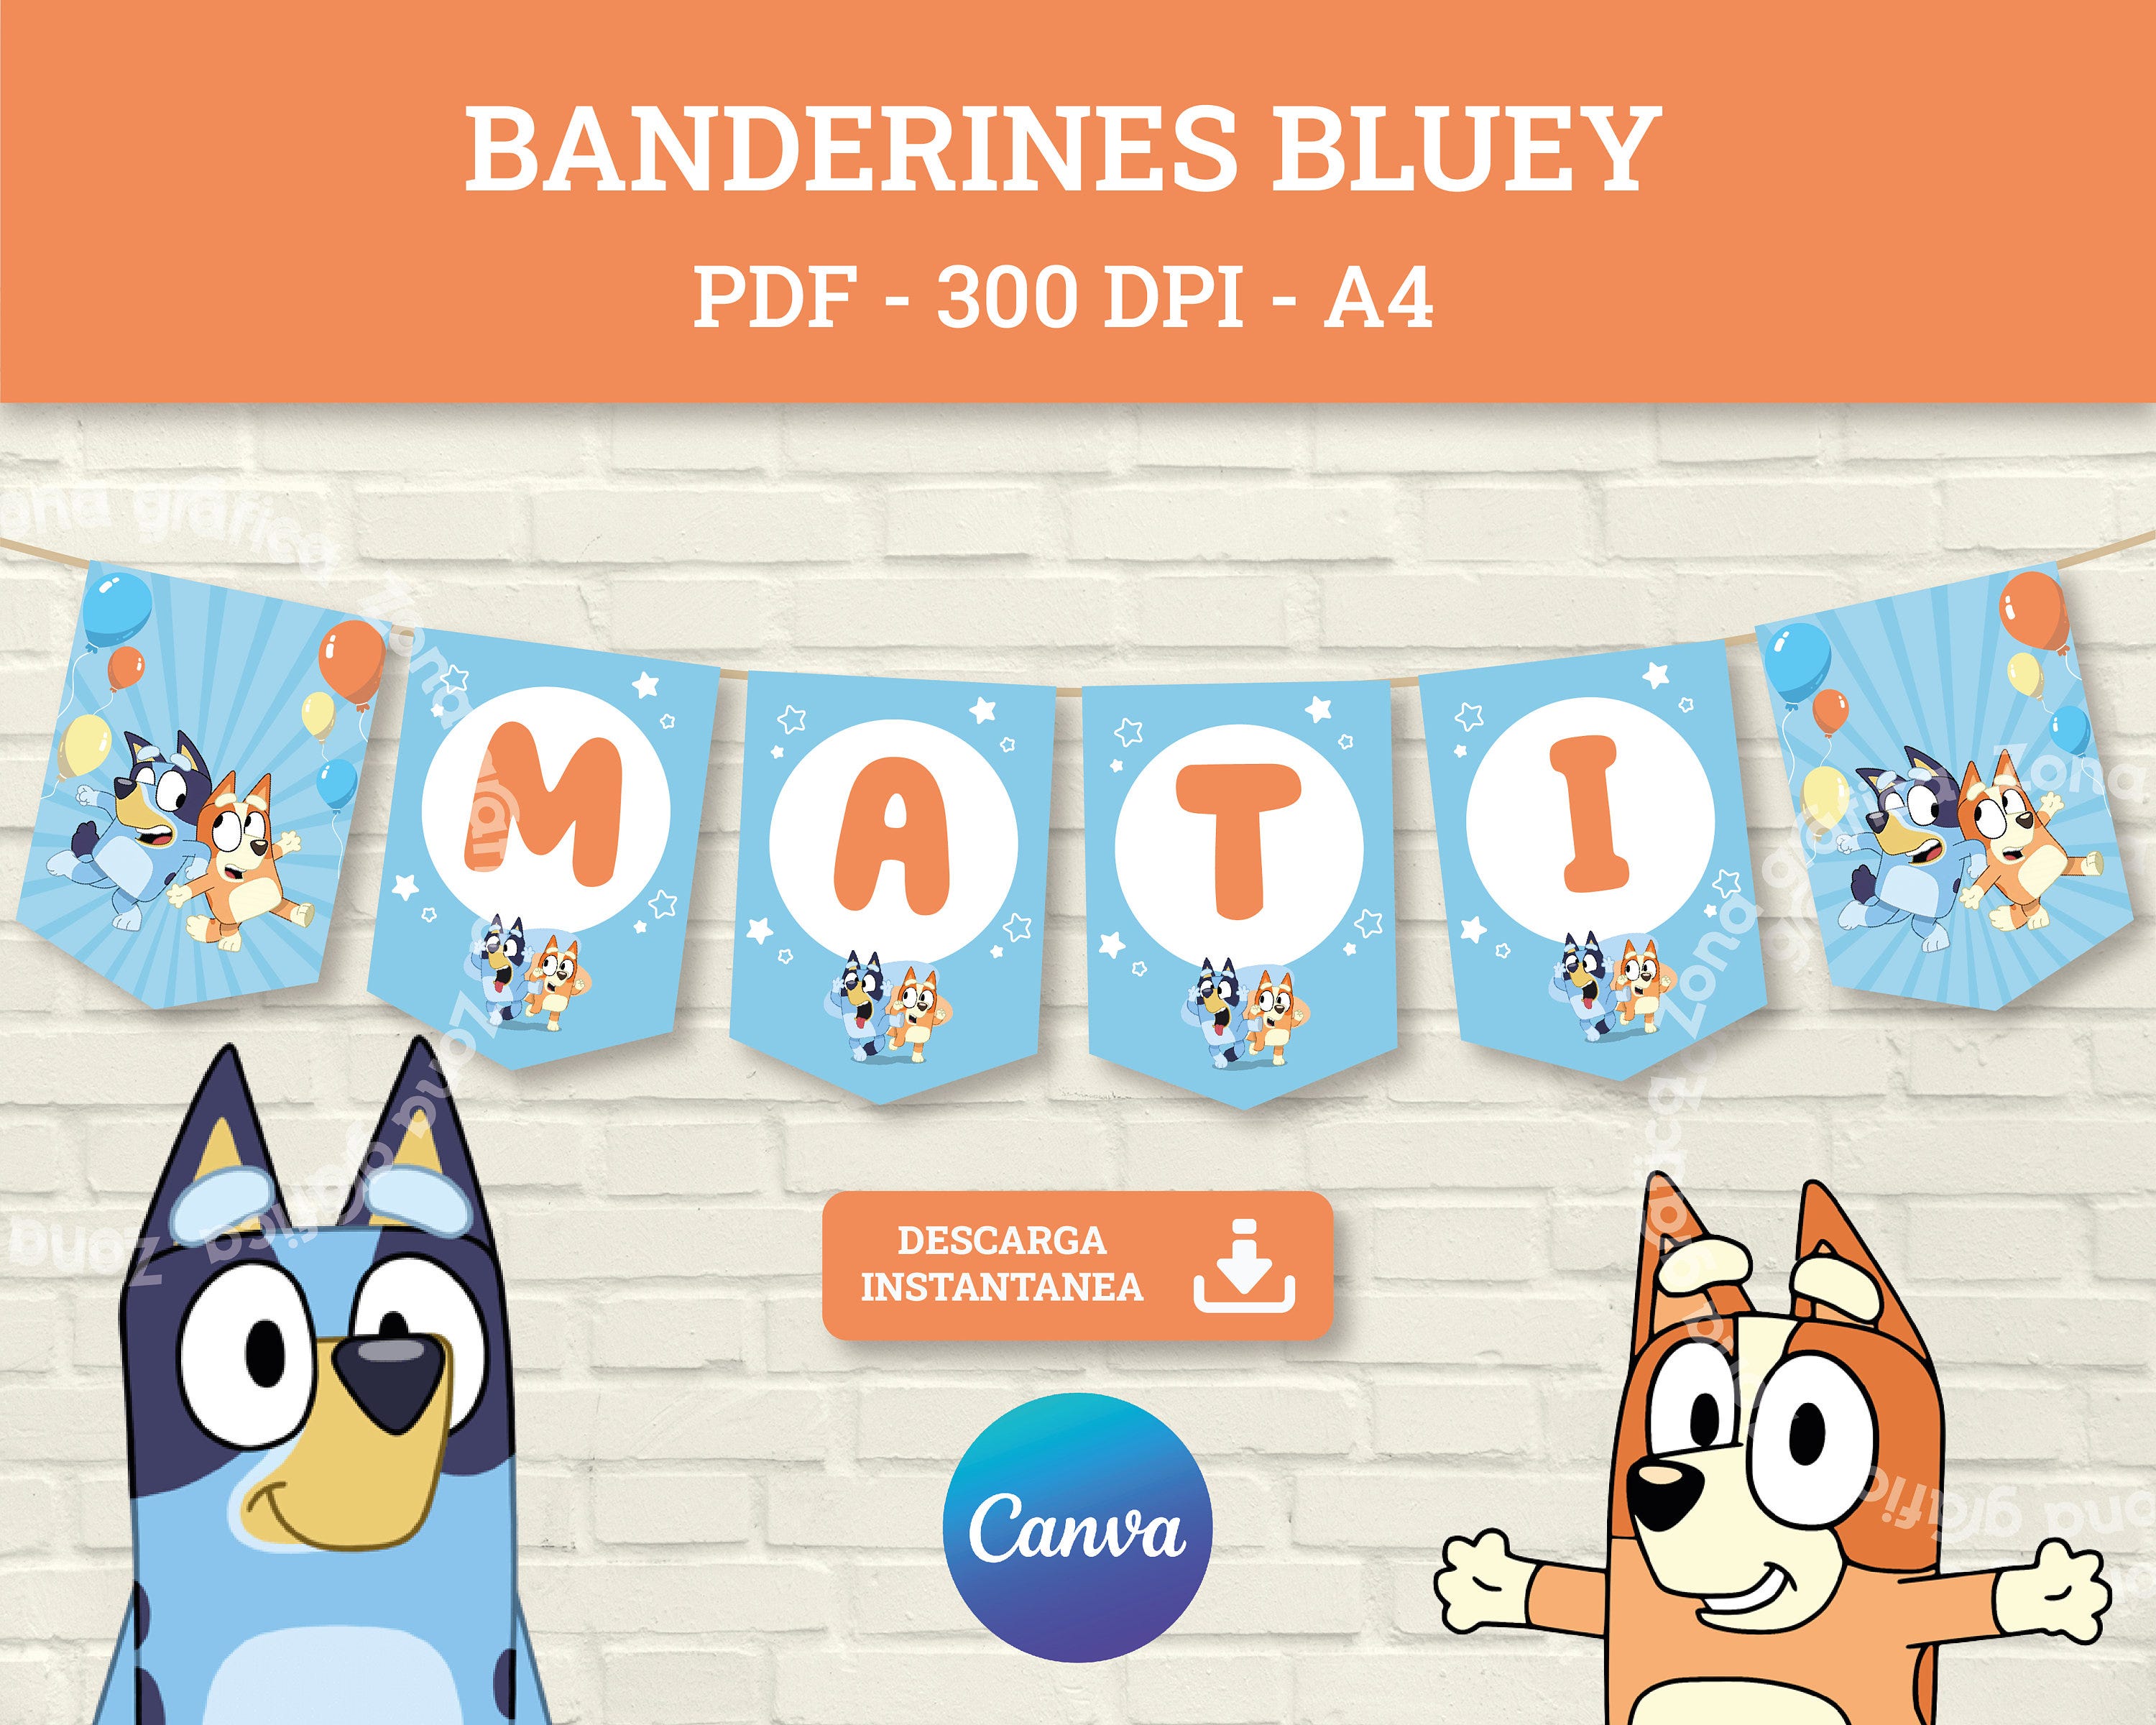 Banderines de cumpleaños Bluey, Decoración de cumpleaños de Bluey, Banderines de fiesta, Bluey PDF, Descarga instantánea